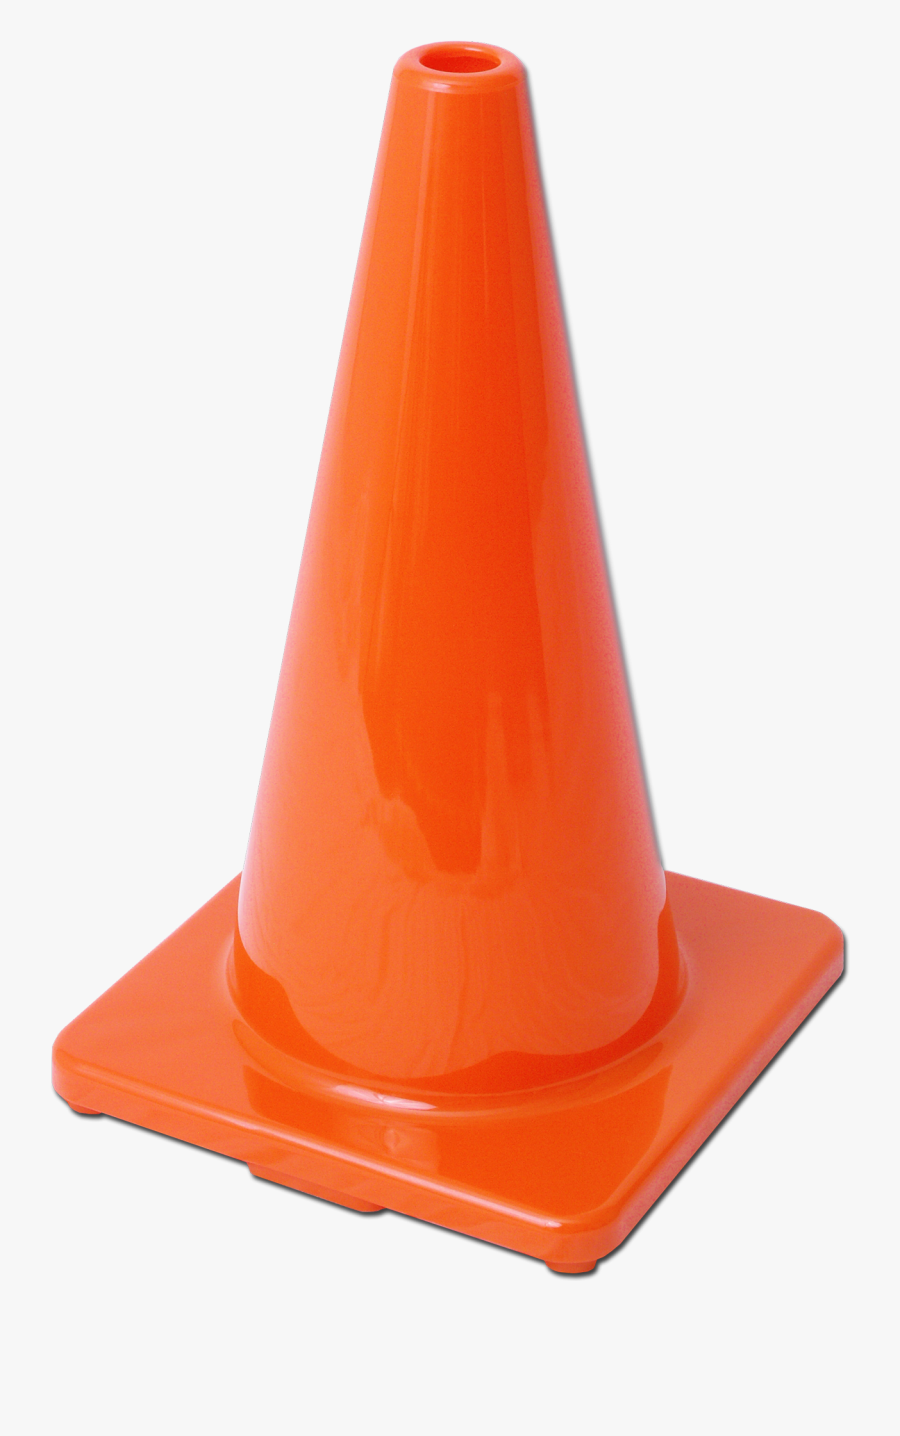 Orange Cone Png - Plastic, Transparent Clipart